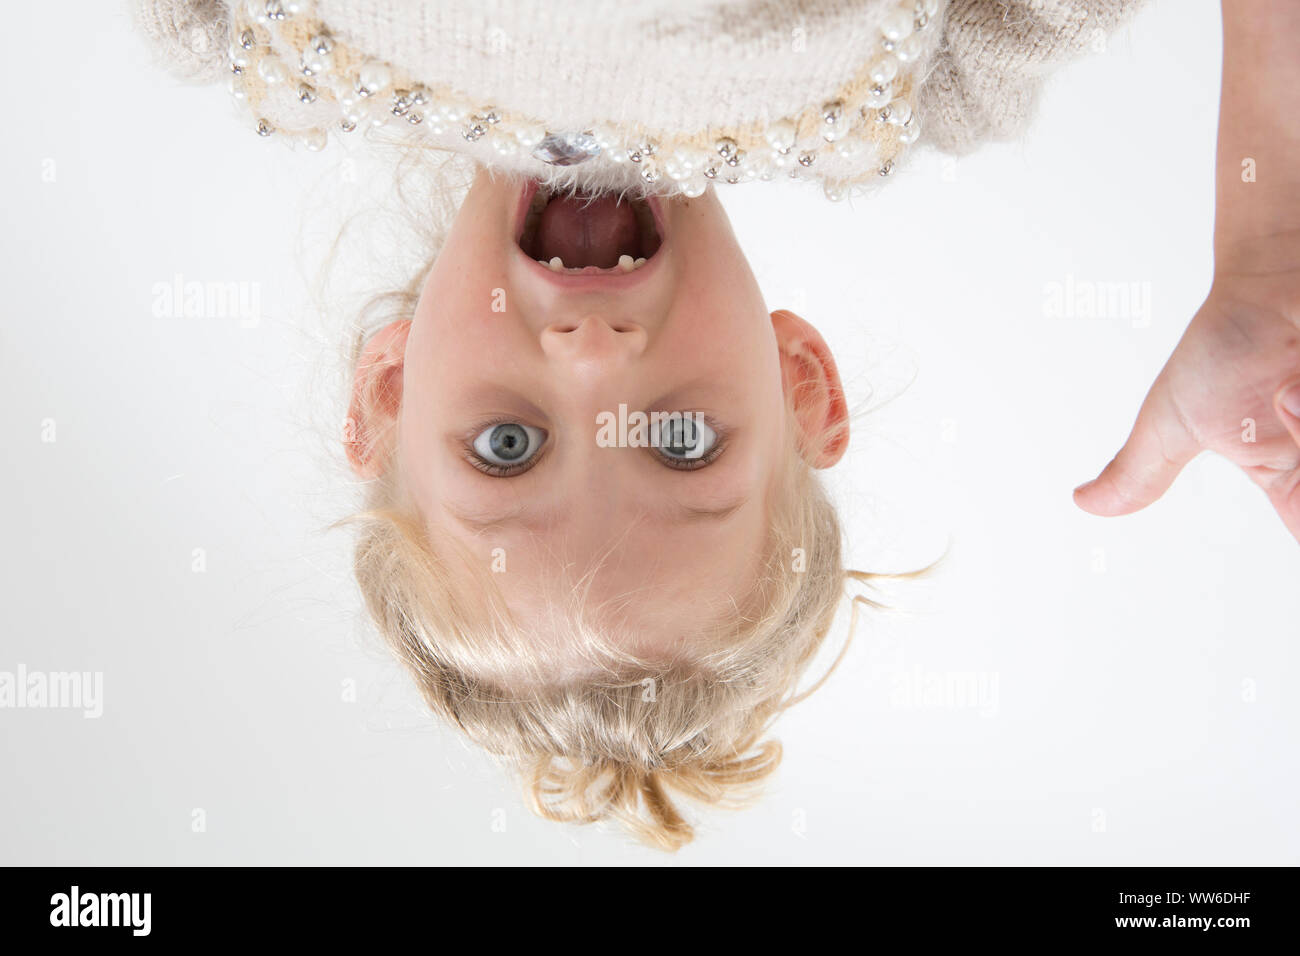 Enfant avec écart de dent sur la tête, portrait Banque D'Images